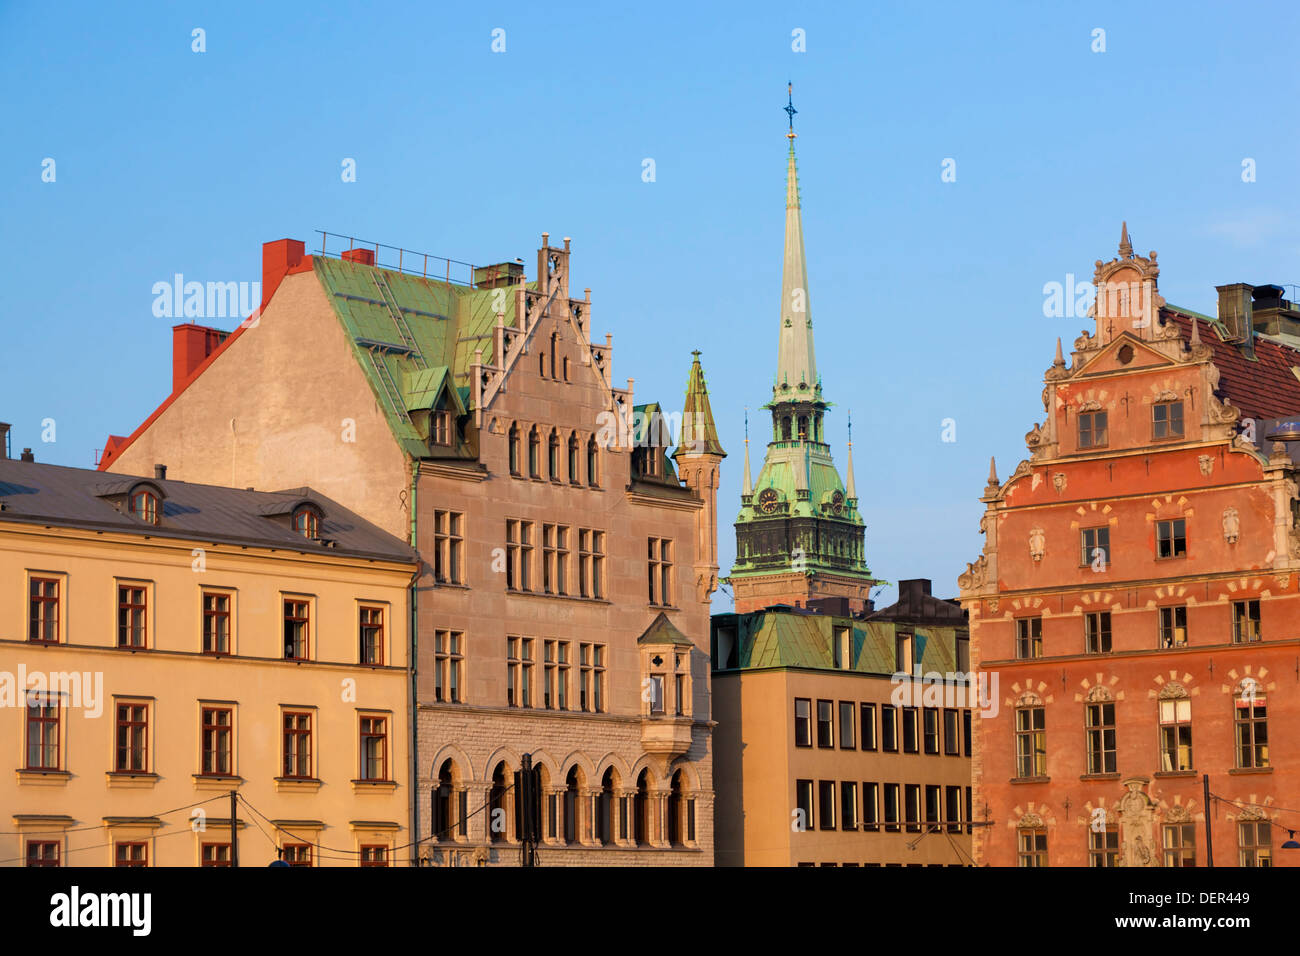 Alte Stadtgebäude im Stadtteil Gamla Stan, Stockholm, Schweden. Stockfoto